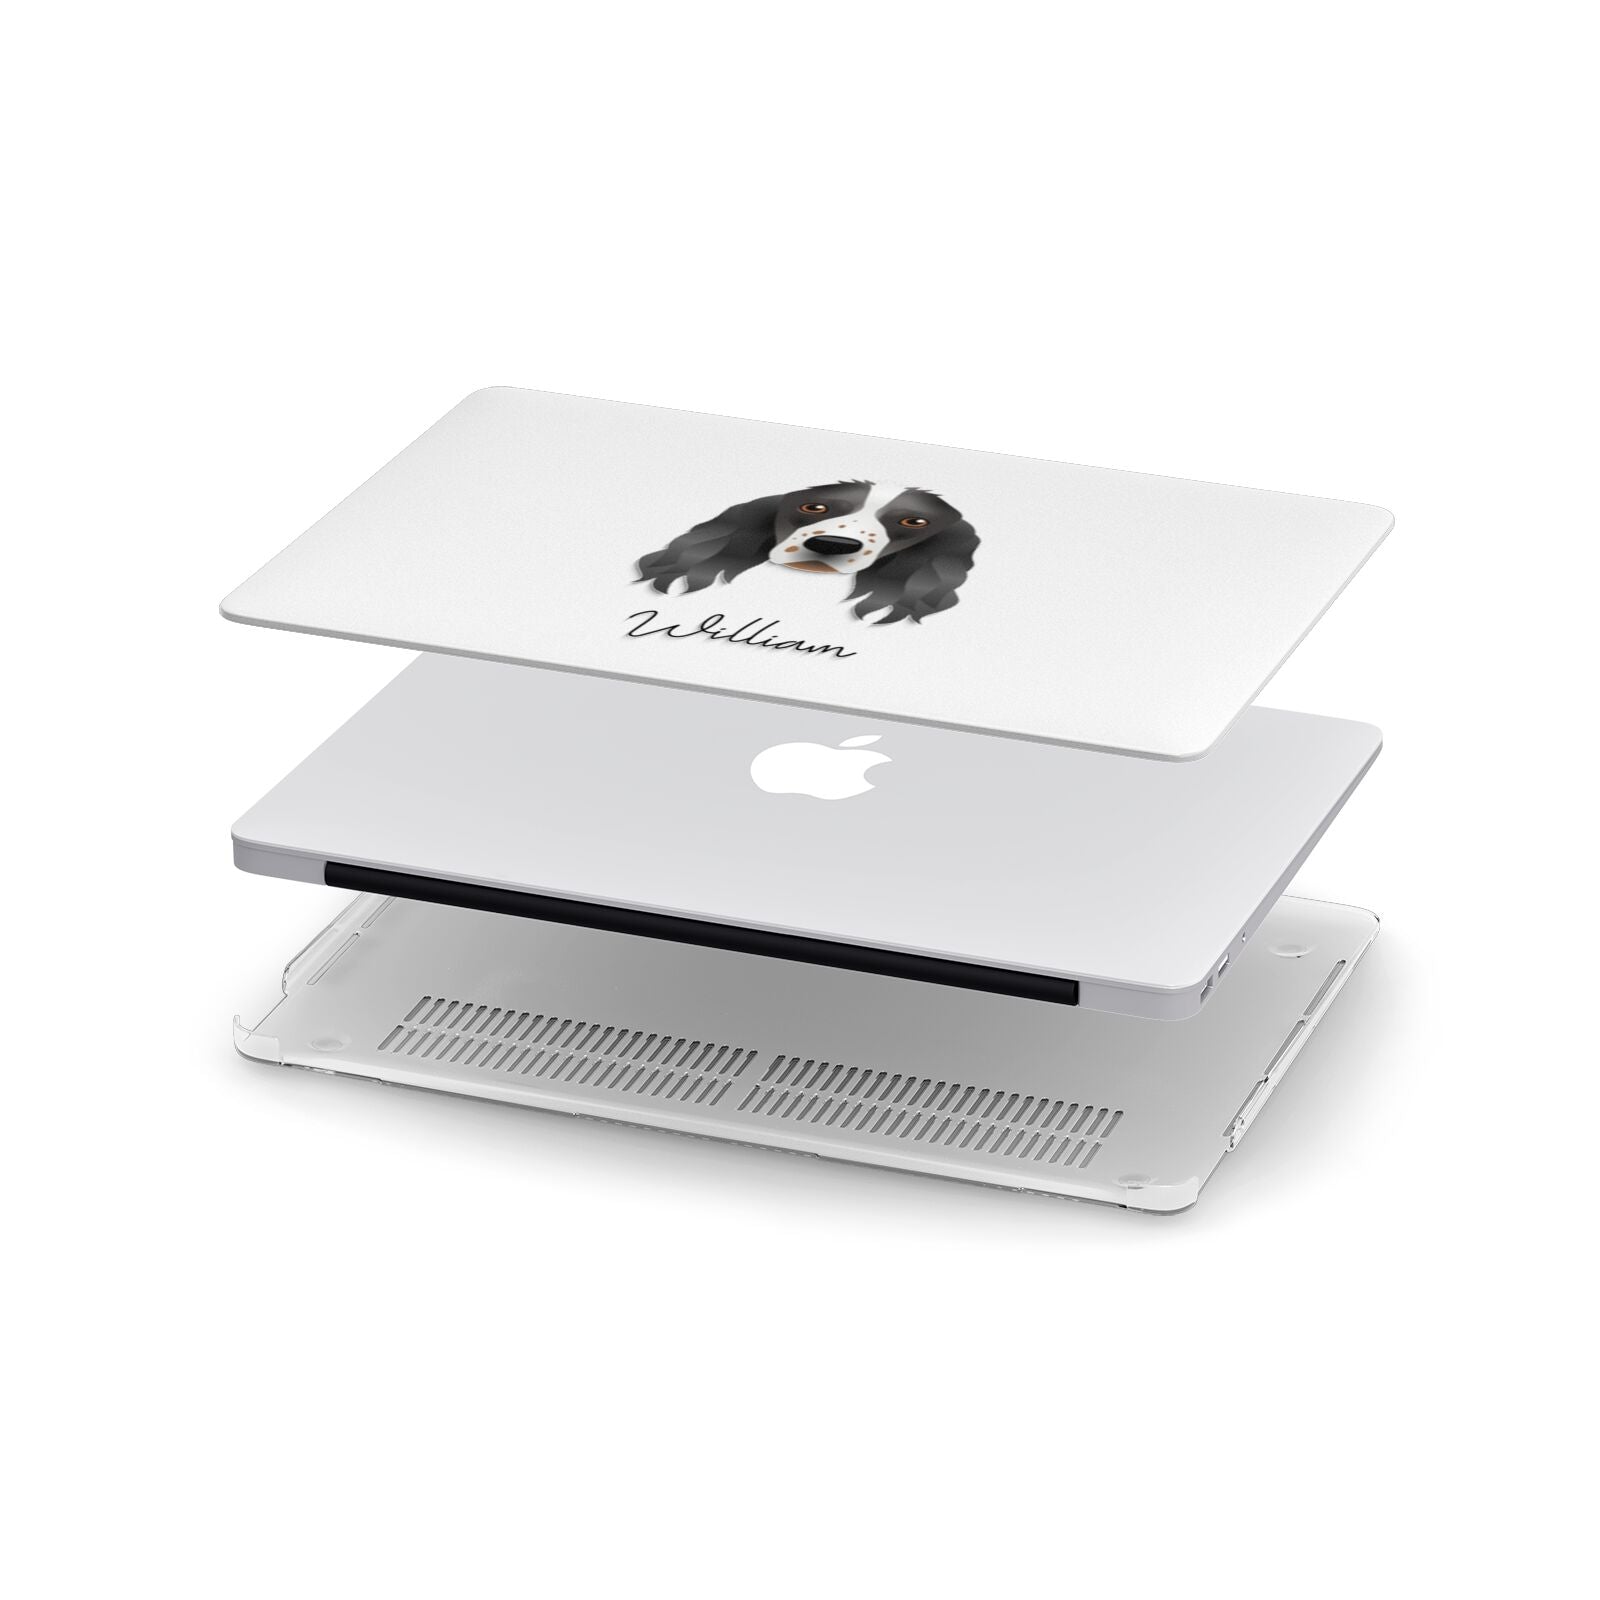 Springer Spaniel Personalised Apple MacBook Case in Detail